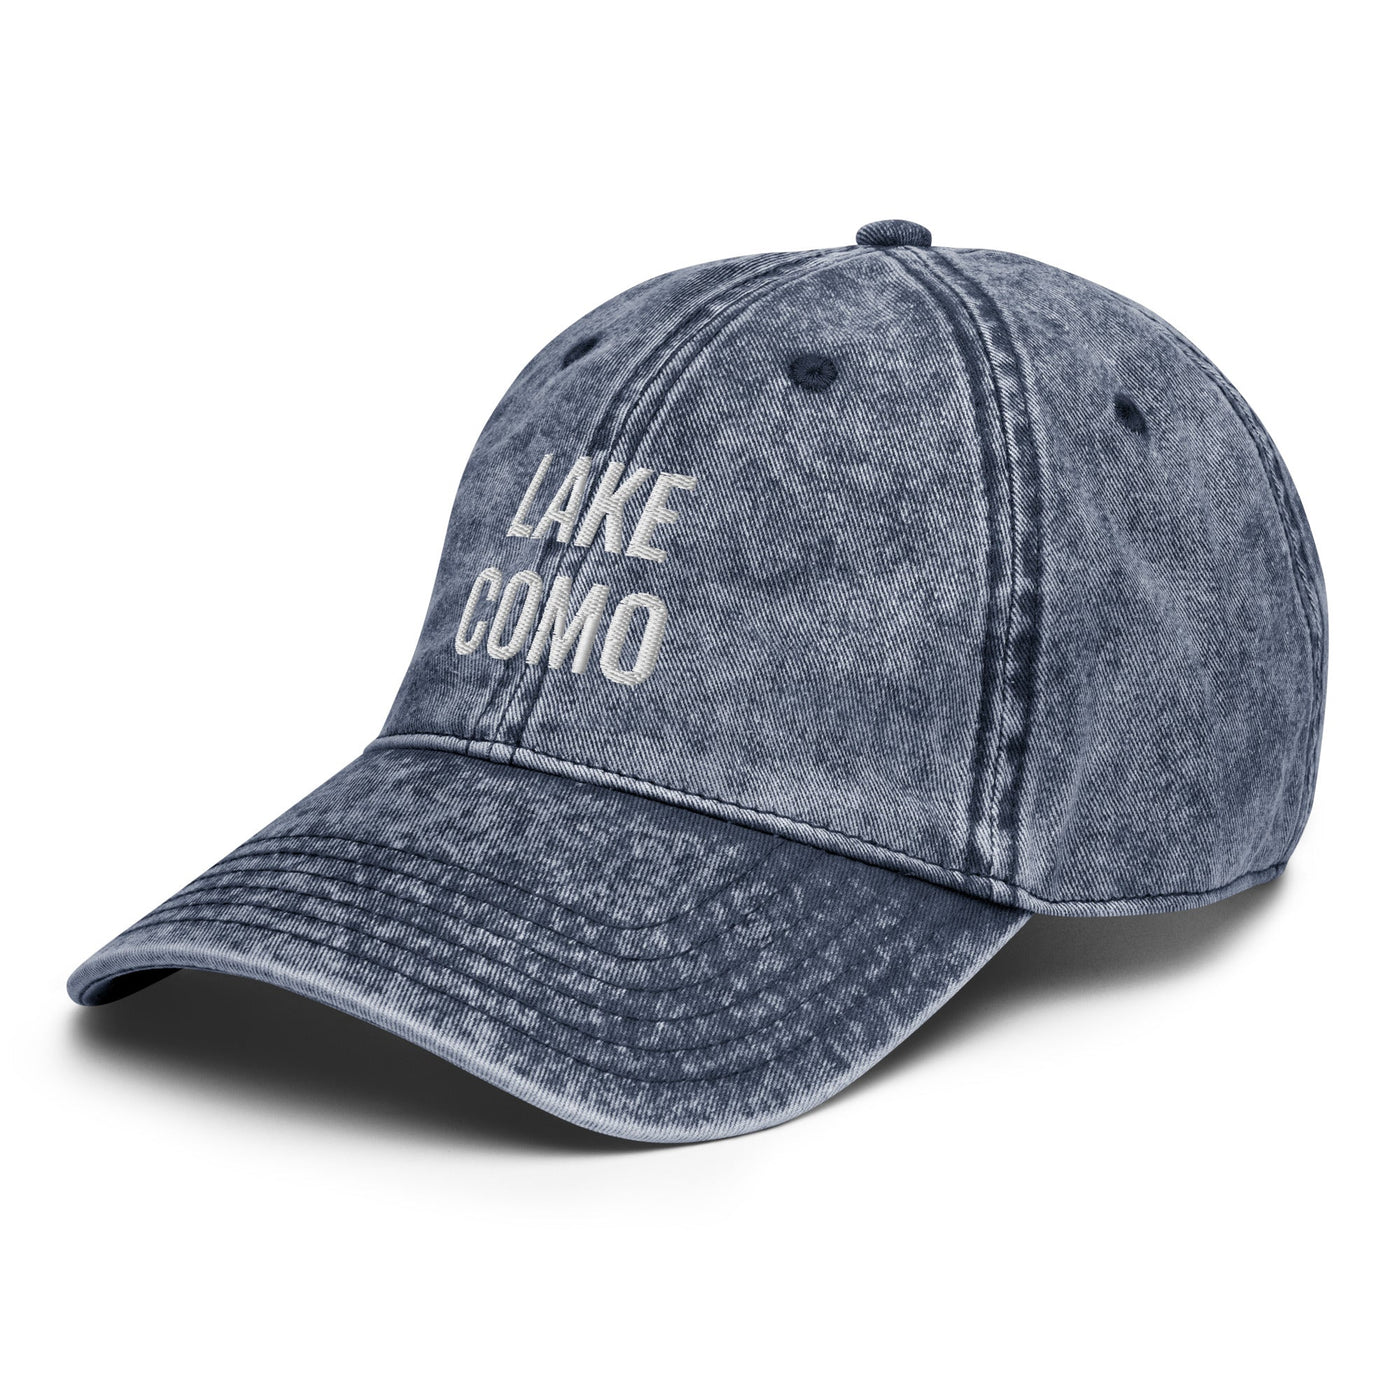 Lake Como Hat - Ezra's Clothing